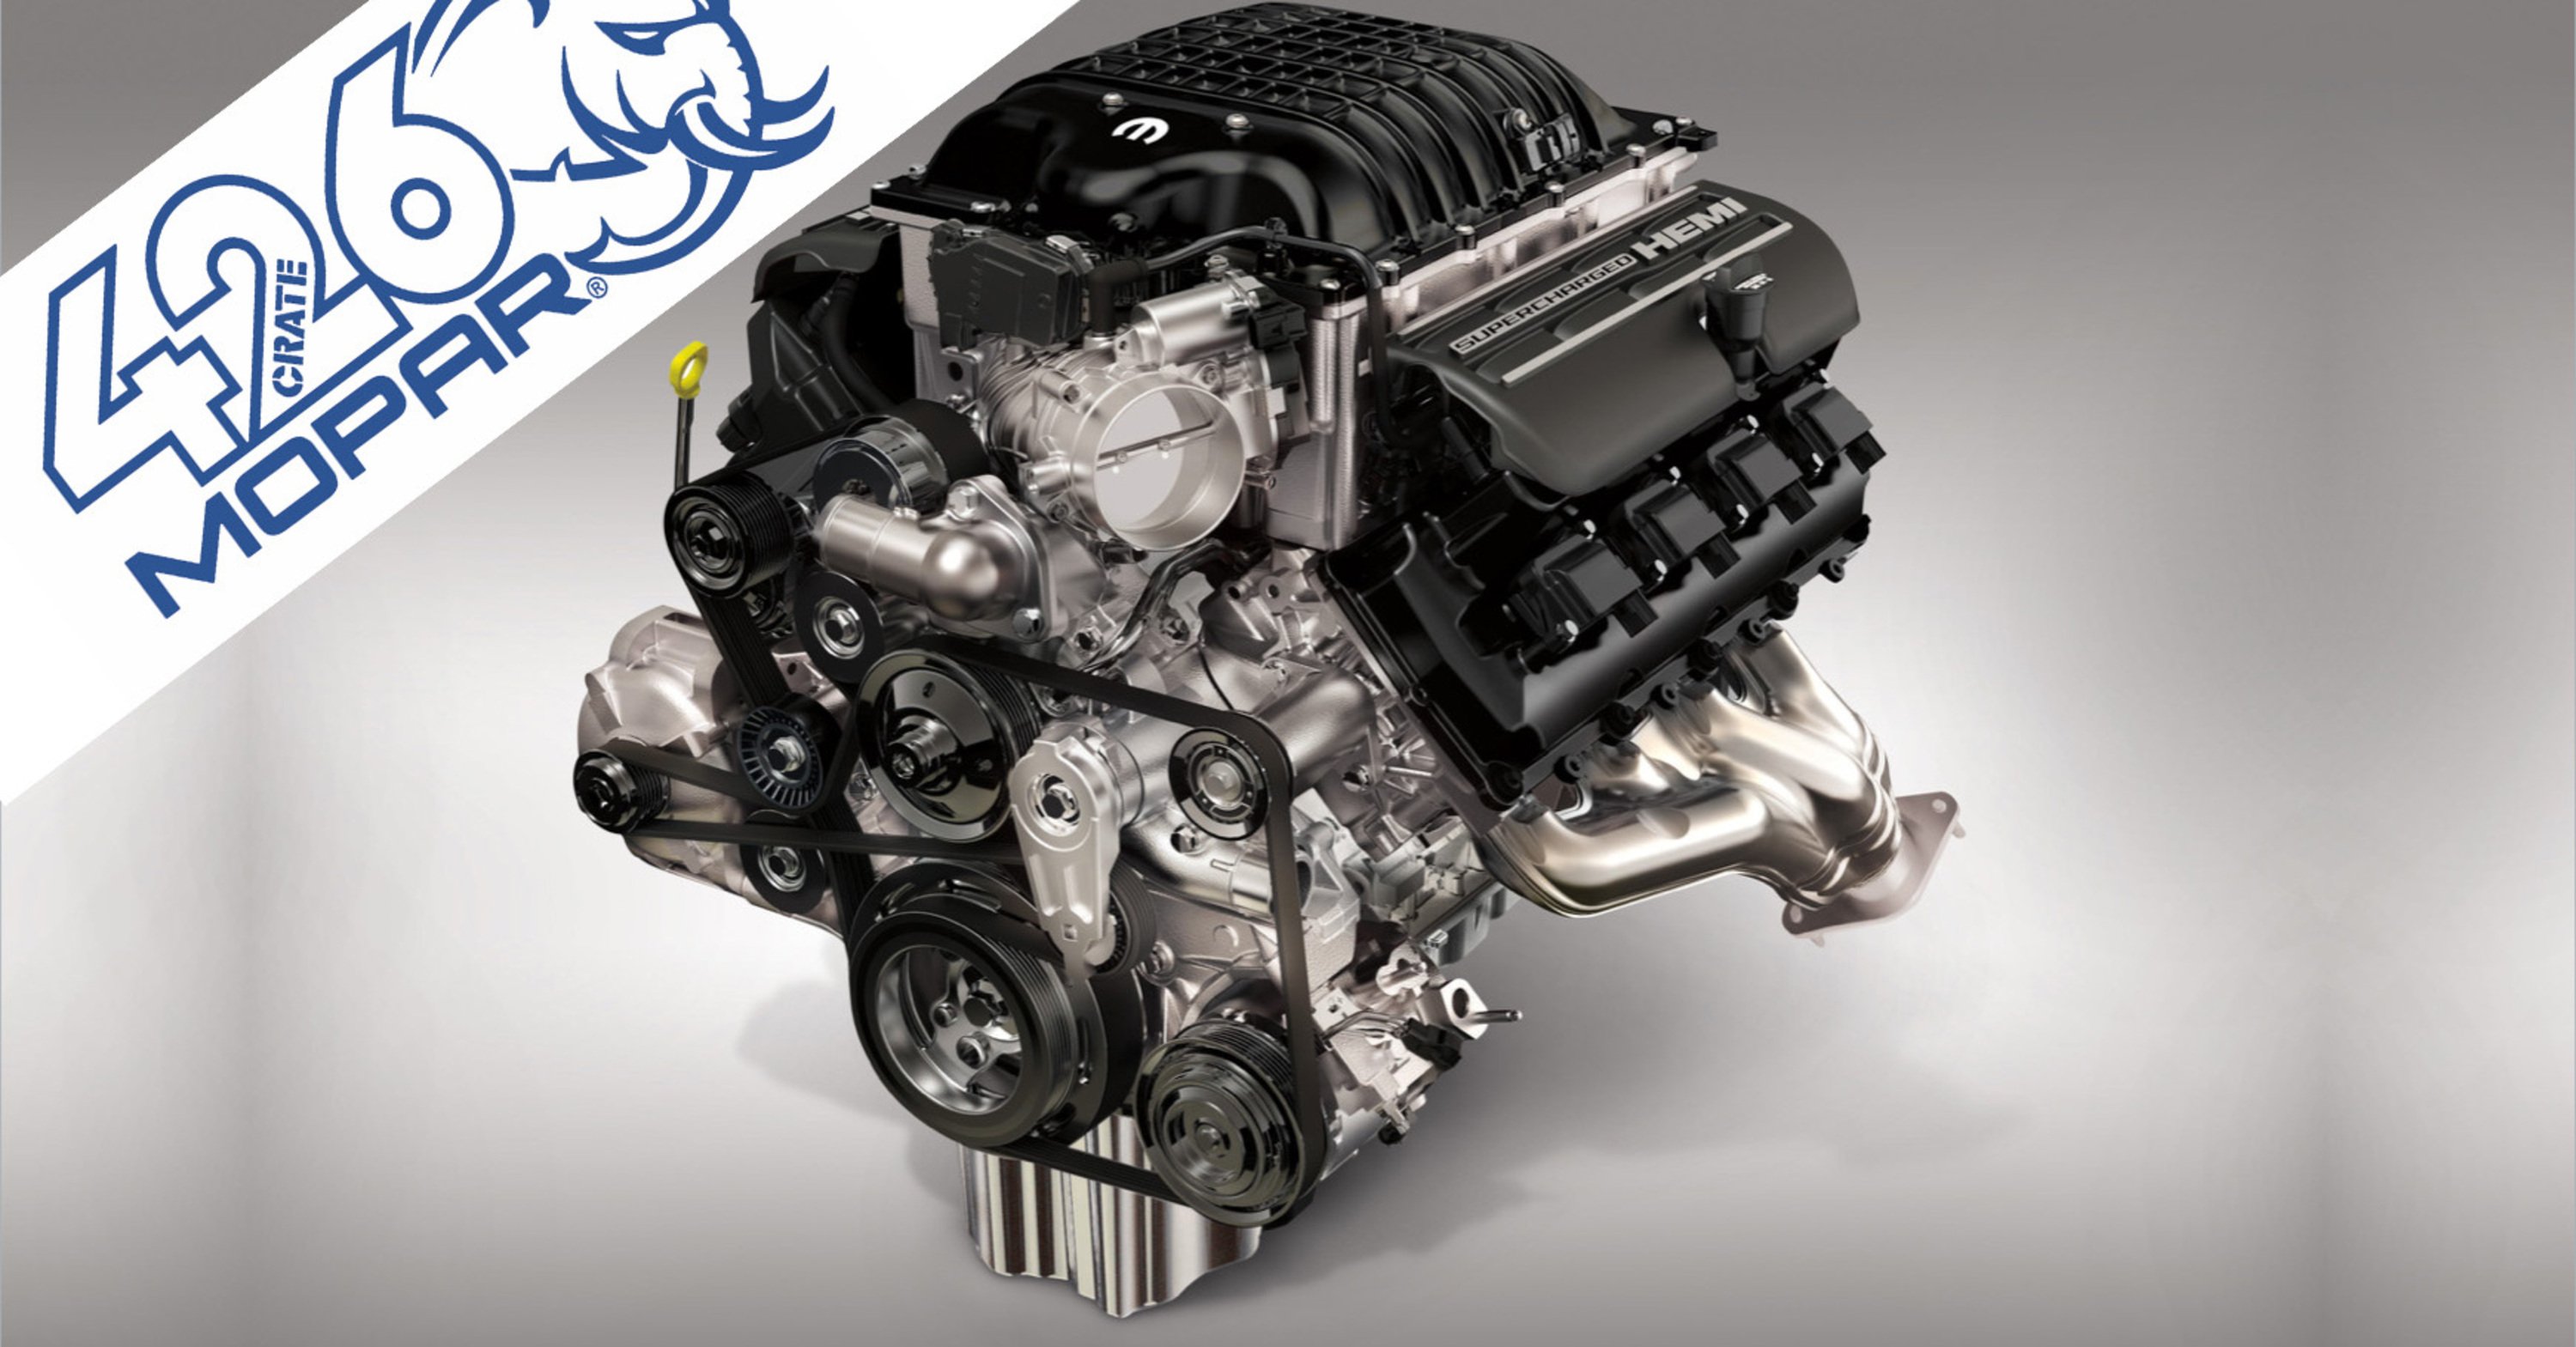 Super motore Hellephant di FCA: 27K per un benzina V8 7.0 da 1000 CV (ma solo per gli USA)